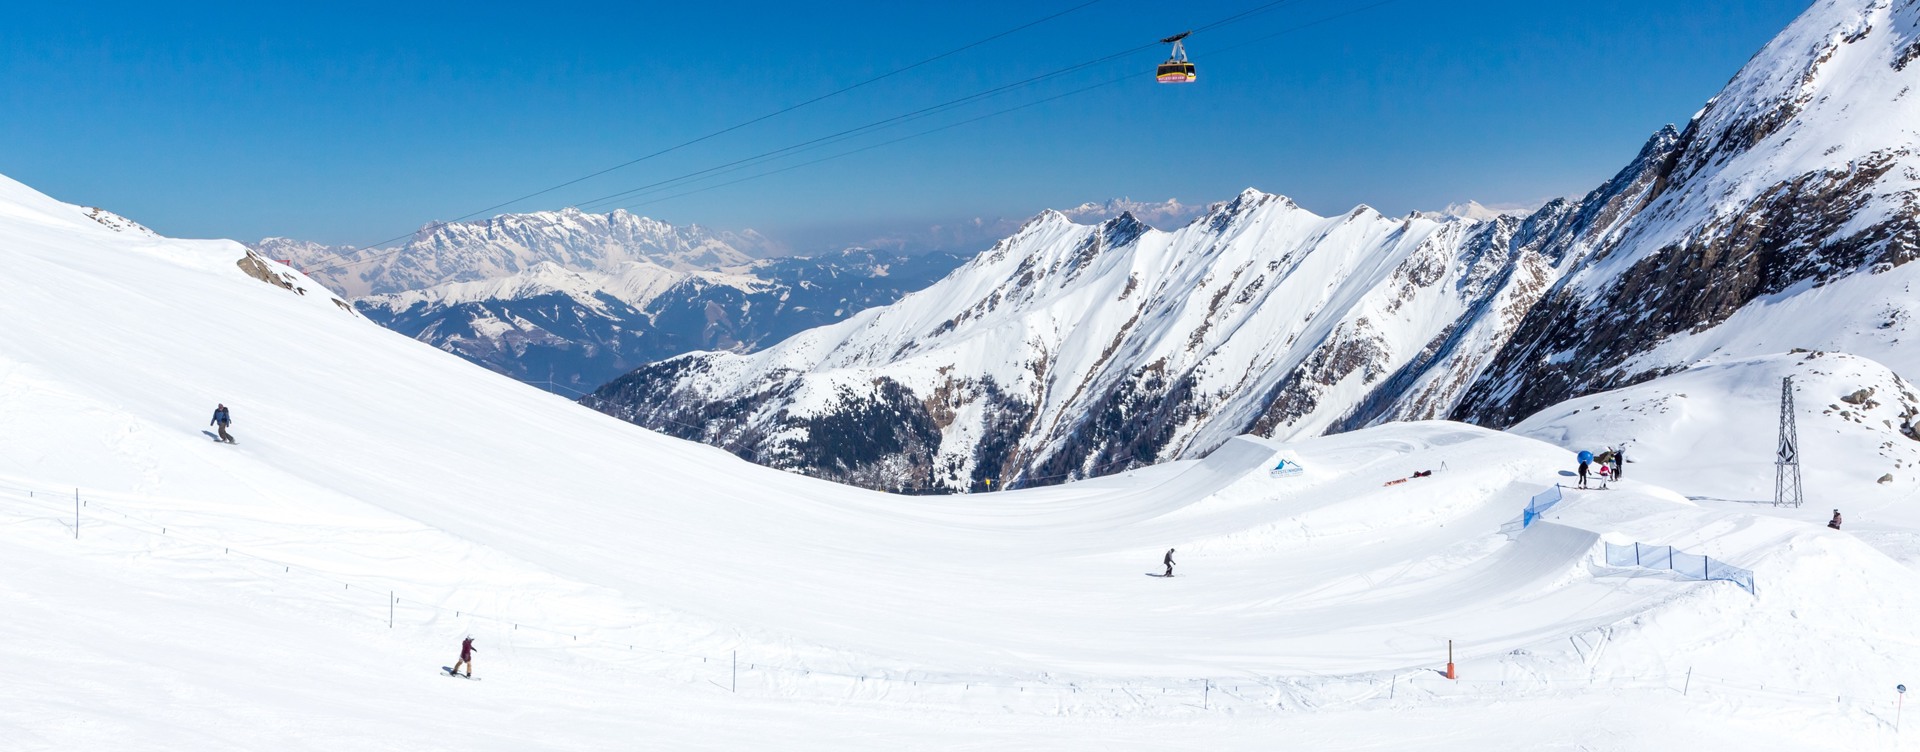 Beleef een onvergetelijke wintersportvakantie
in de Oostenrijkse Alpen